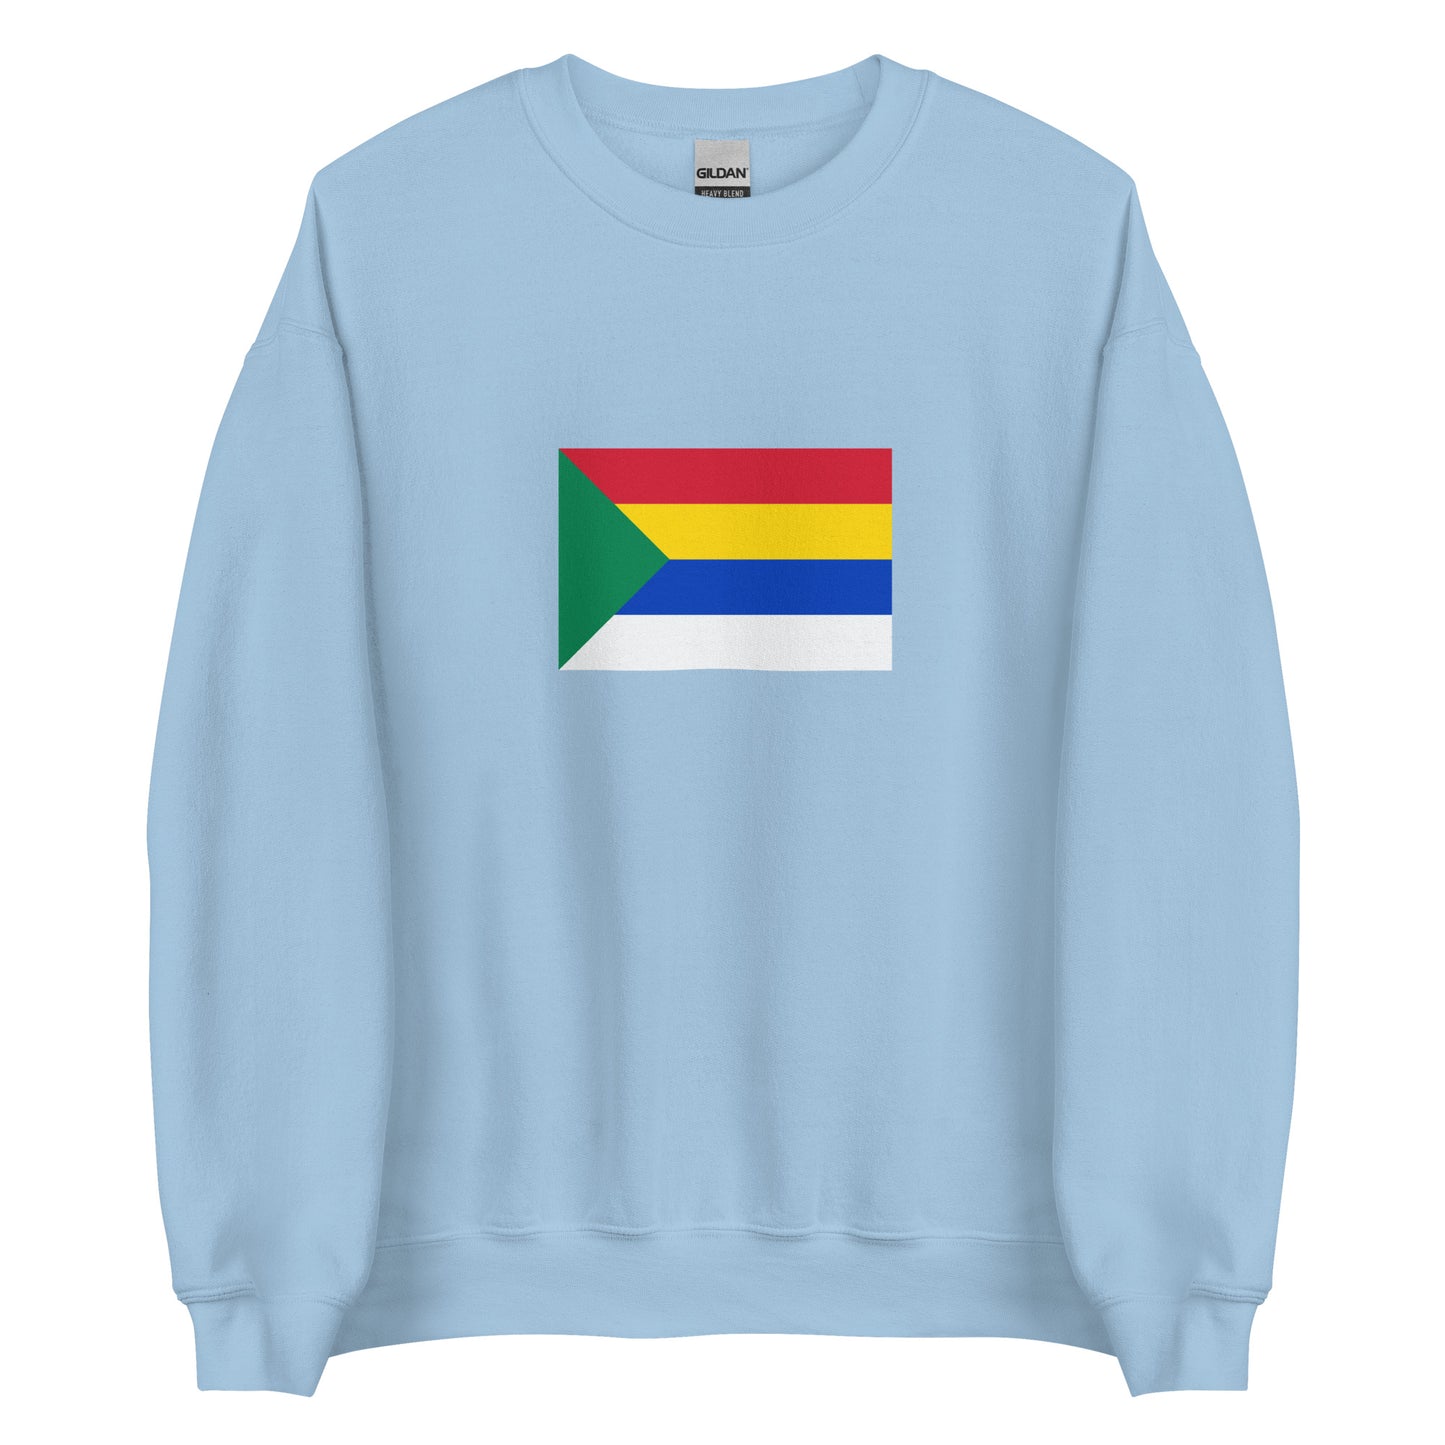 Israel - Druze | Ethnic Israel Flag Interactive Sweatshirt